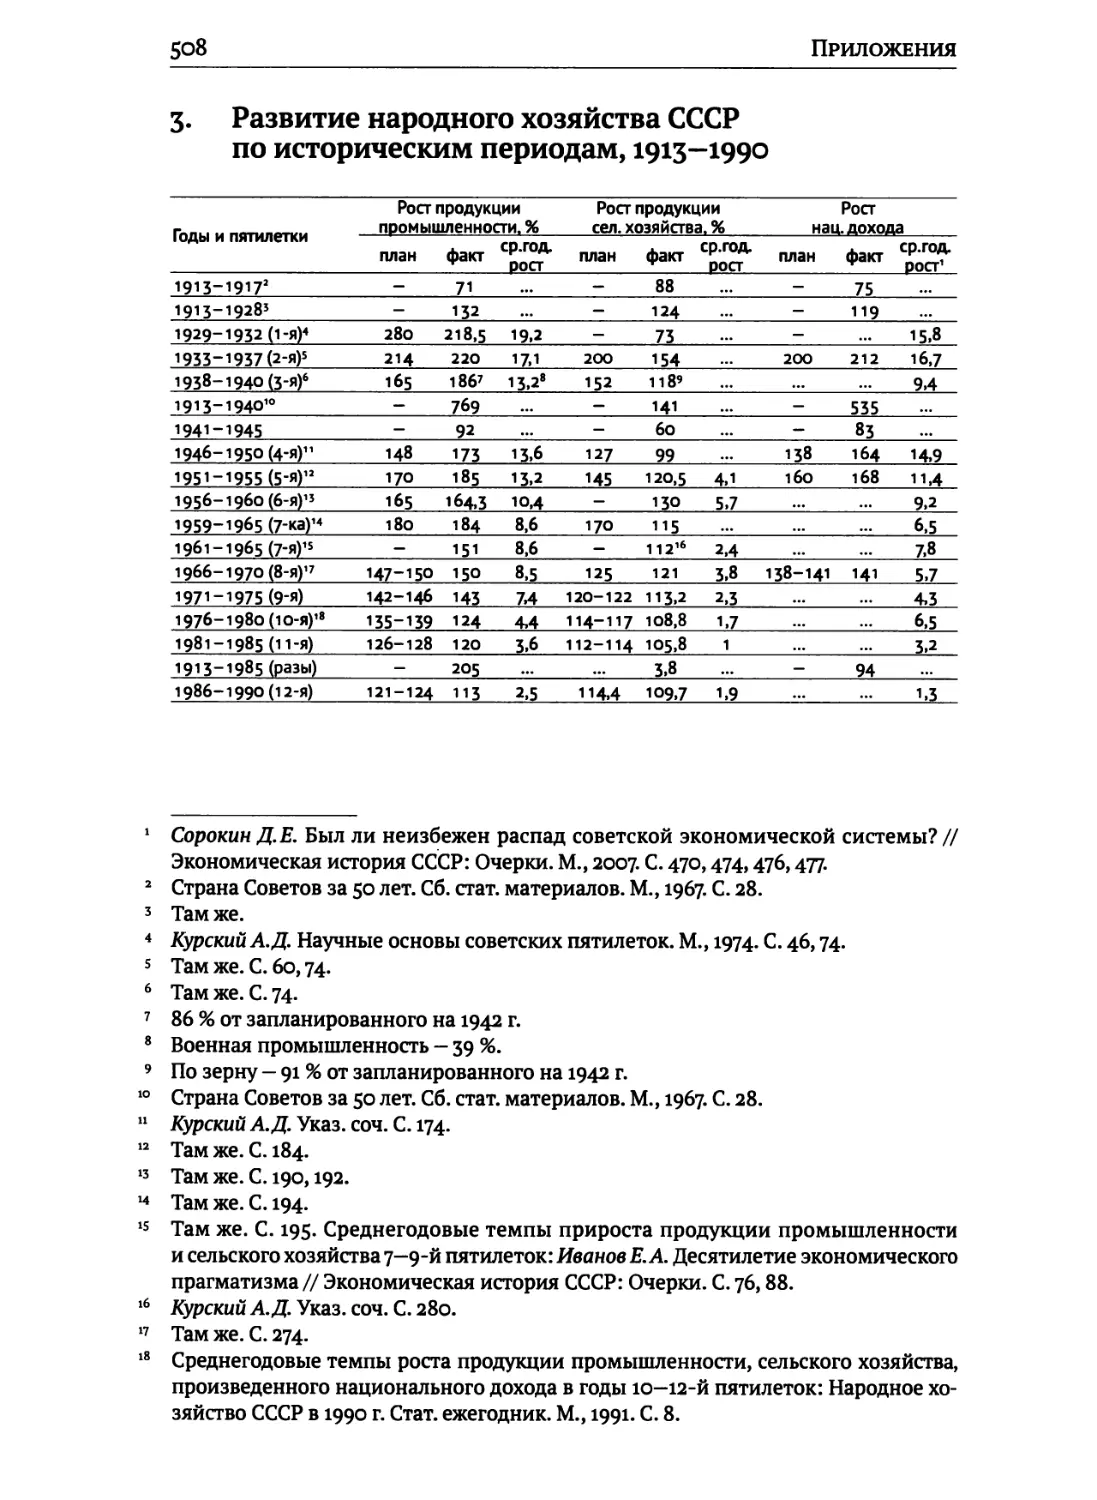 Развитие народного хозяйства СССР по историческим периодам, 1913—1990